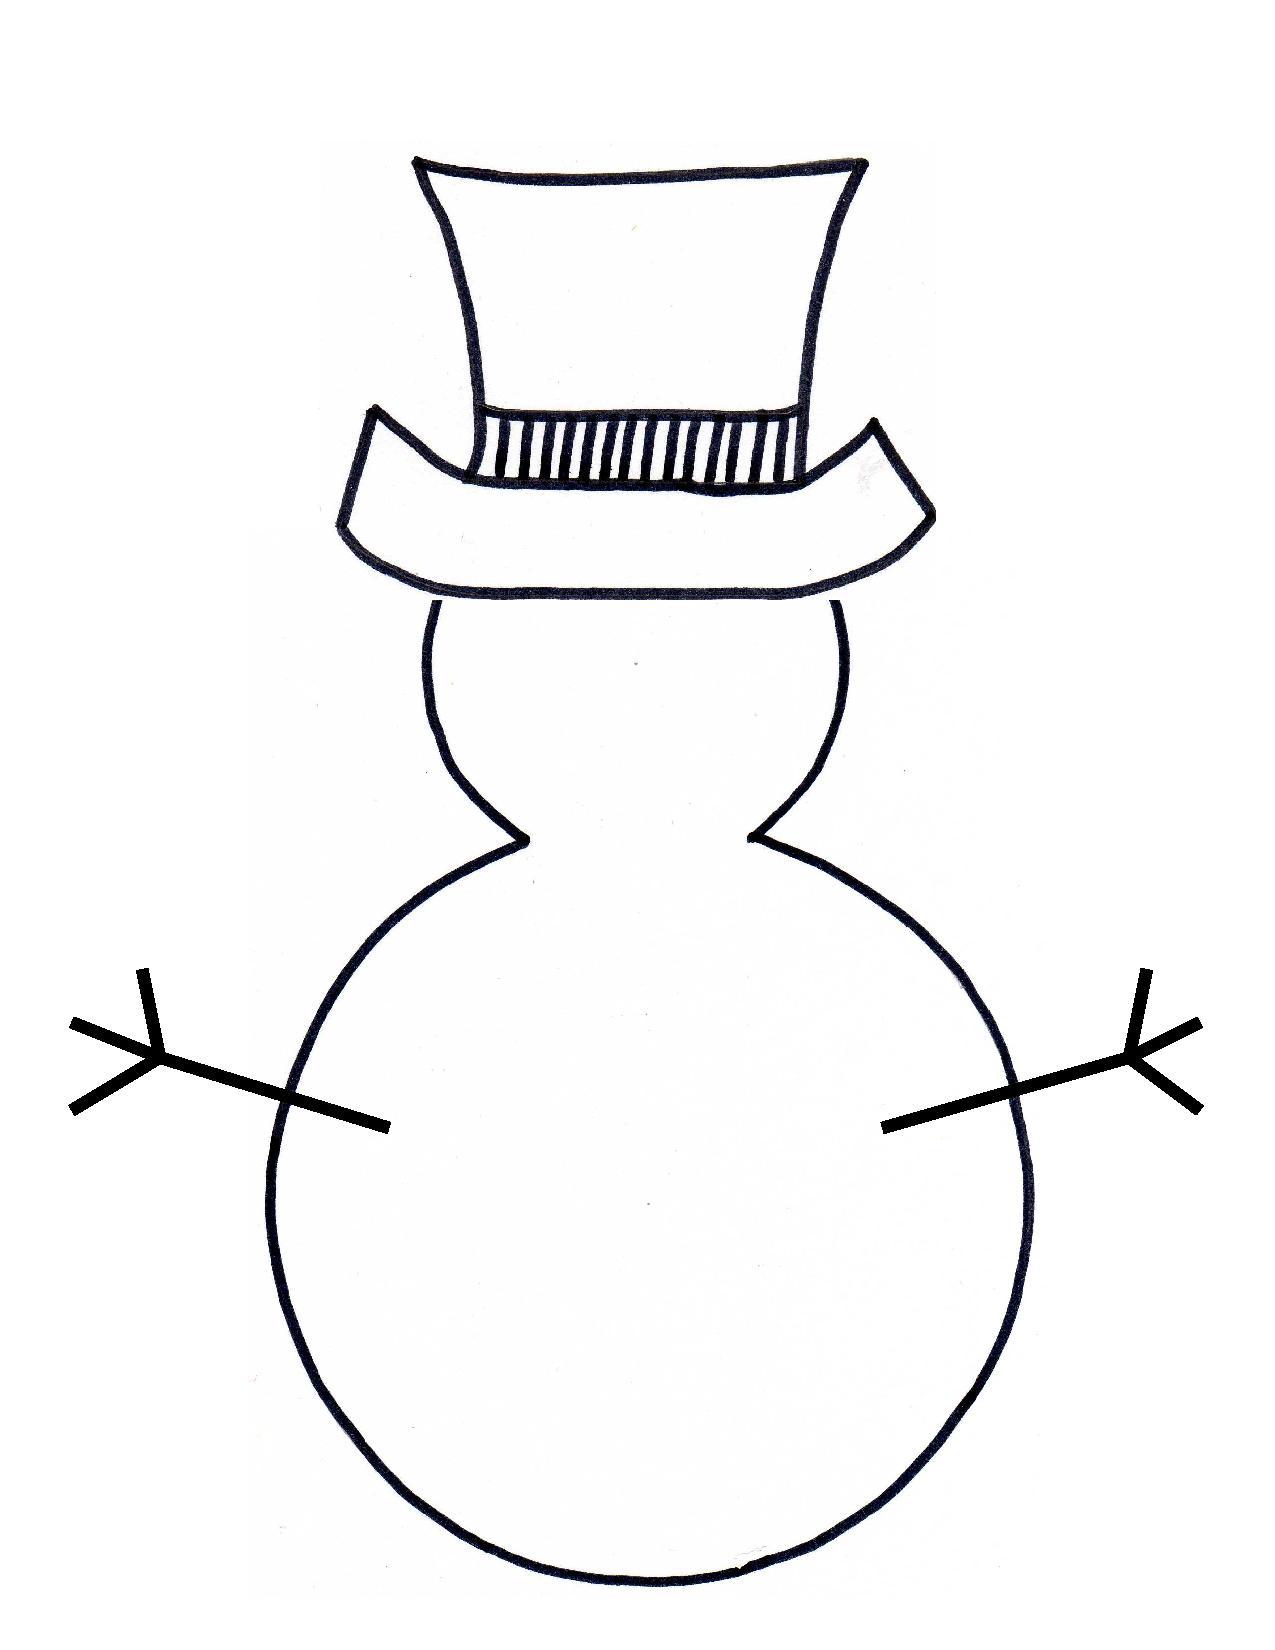 Snowman Outline Clipart